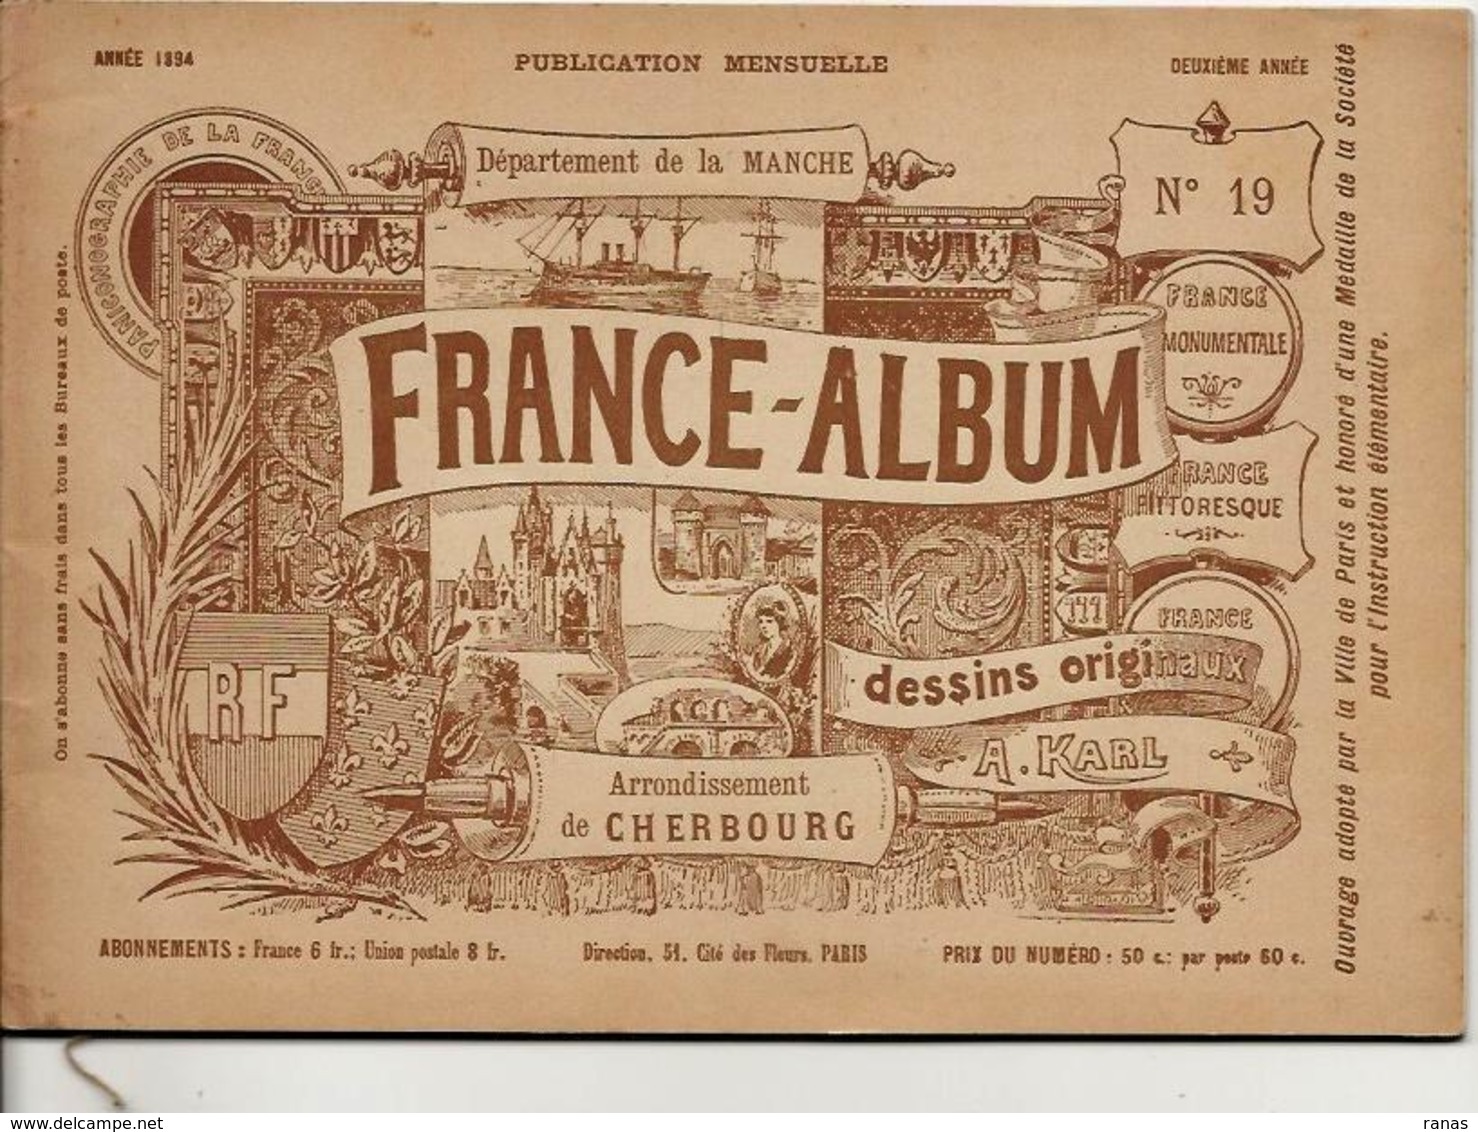 Manche 50 France Album De A. KARL, Carte Gravures Texte Publicités 1894 - Reiseprospekte